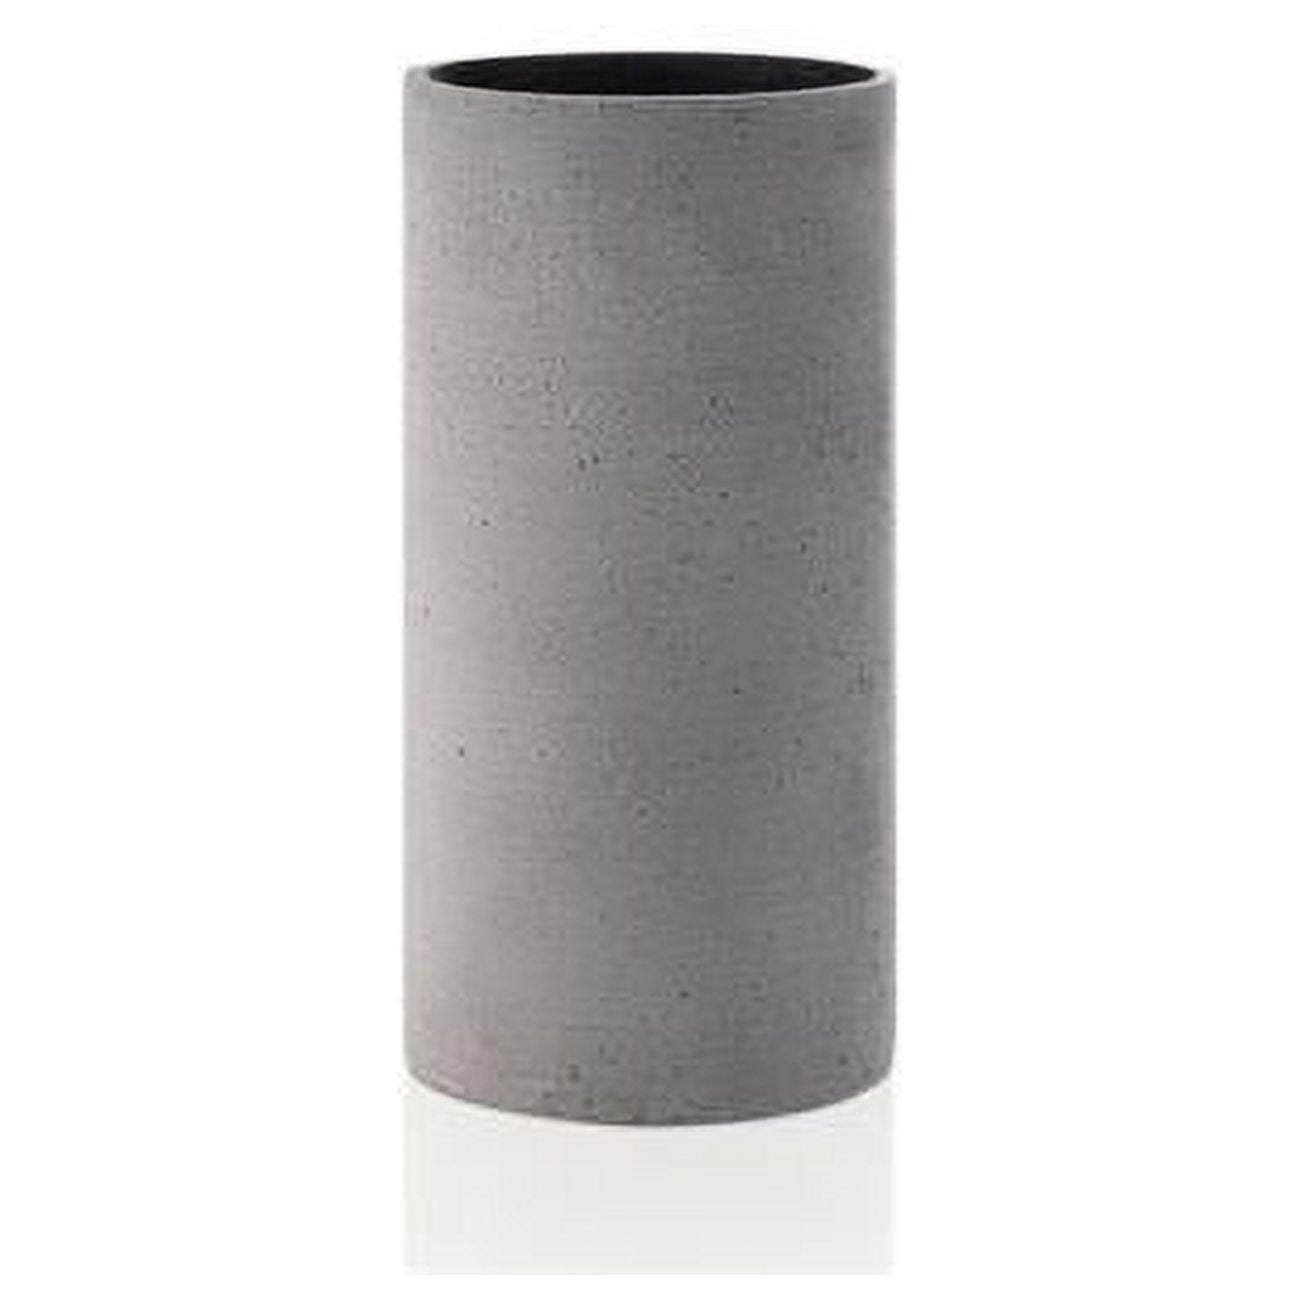 Picture of Blomus 65626 Polystone Vase, Dark Gray - Medium